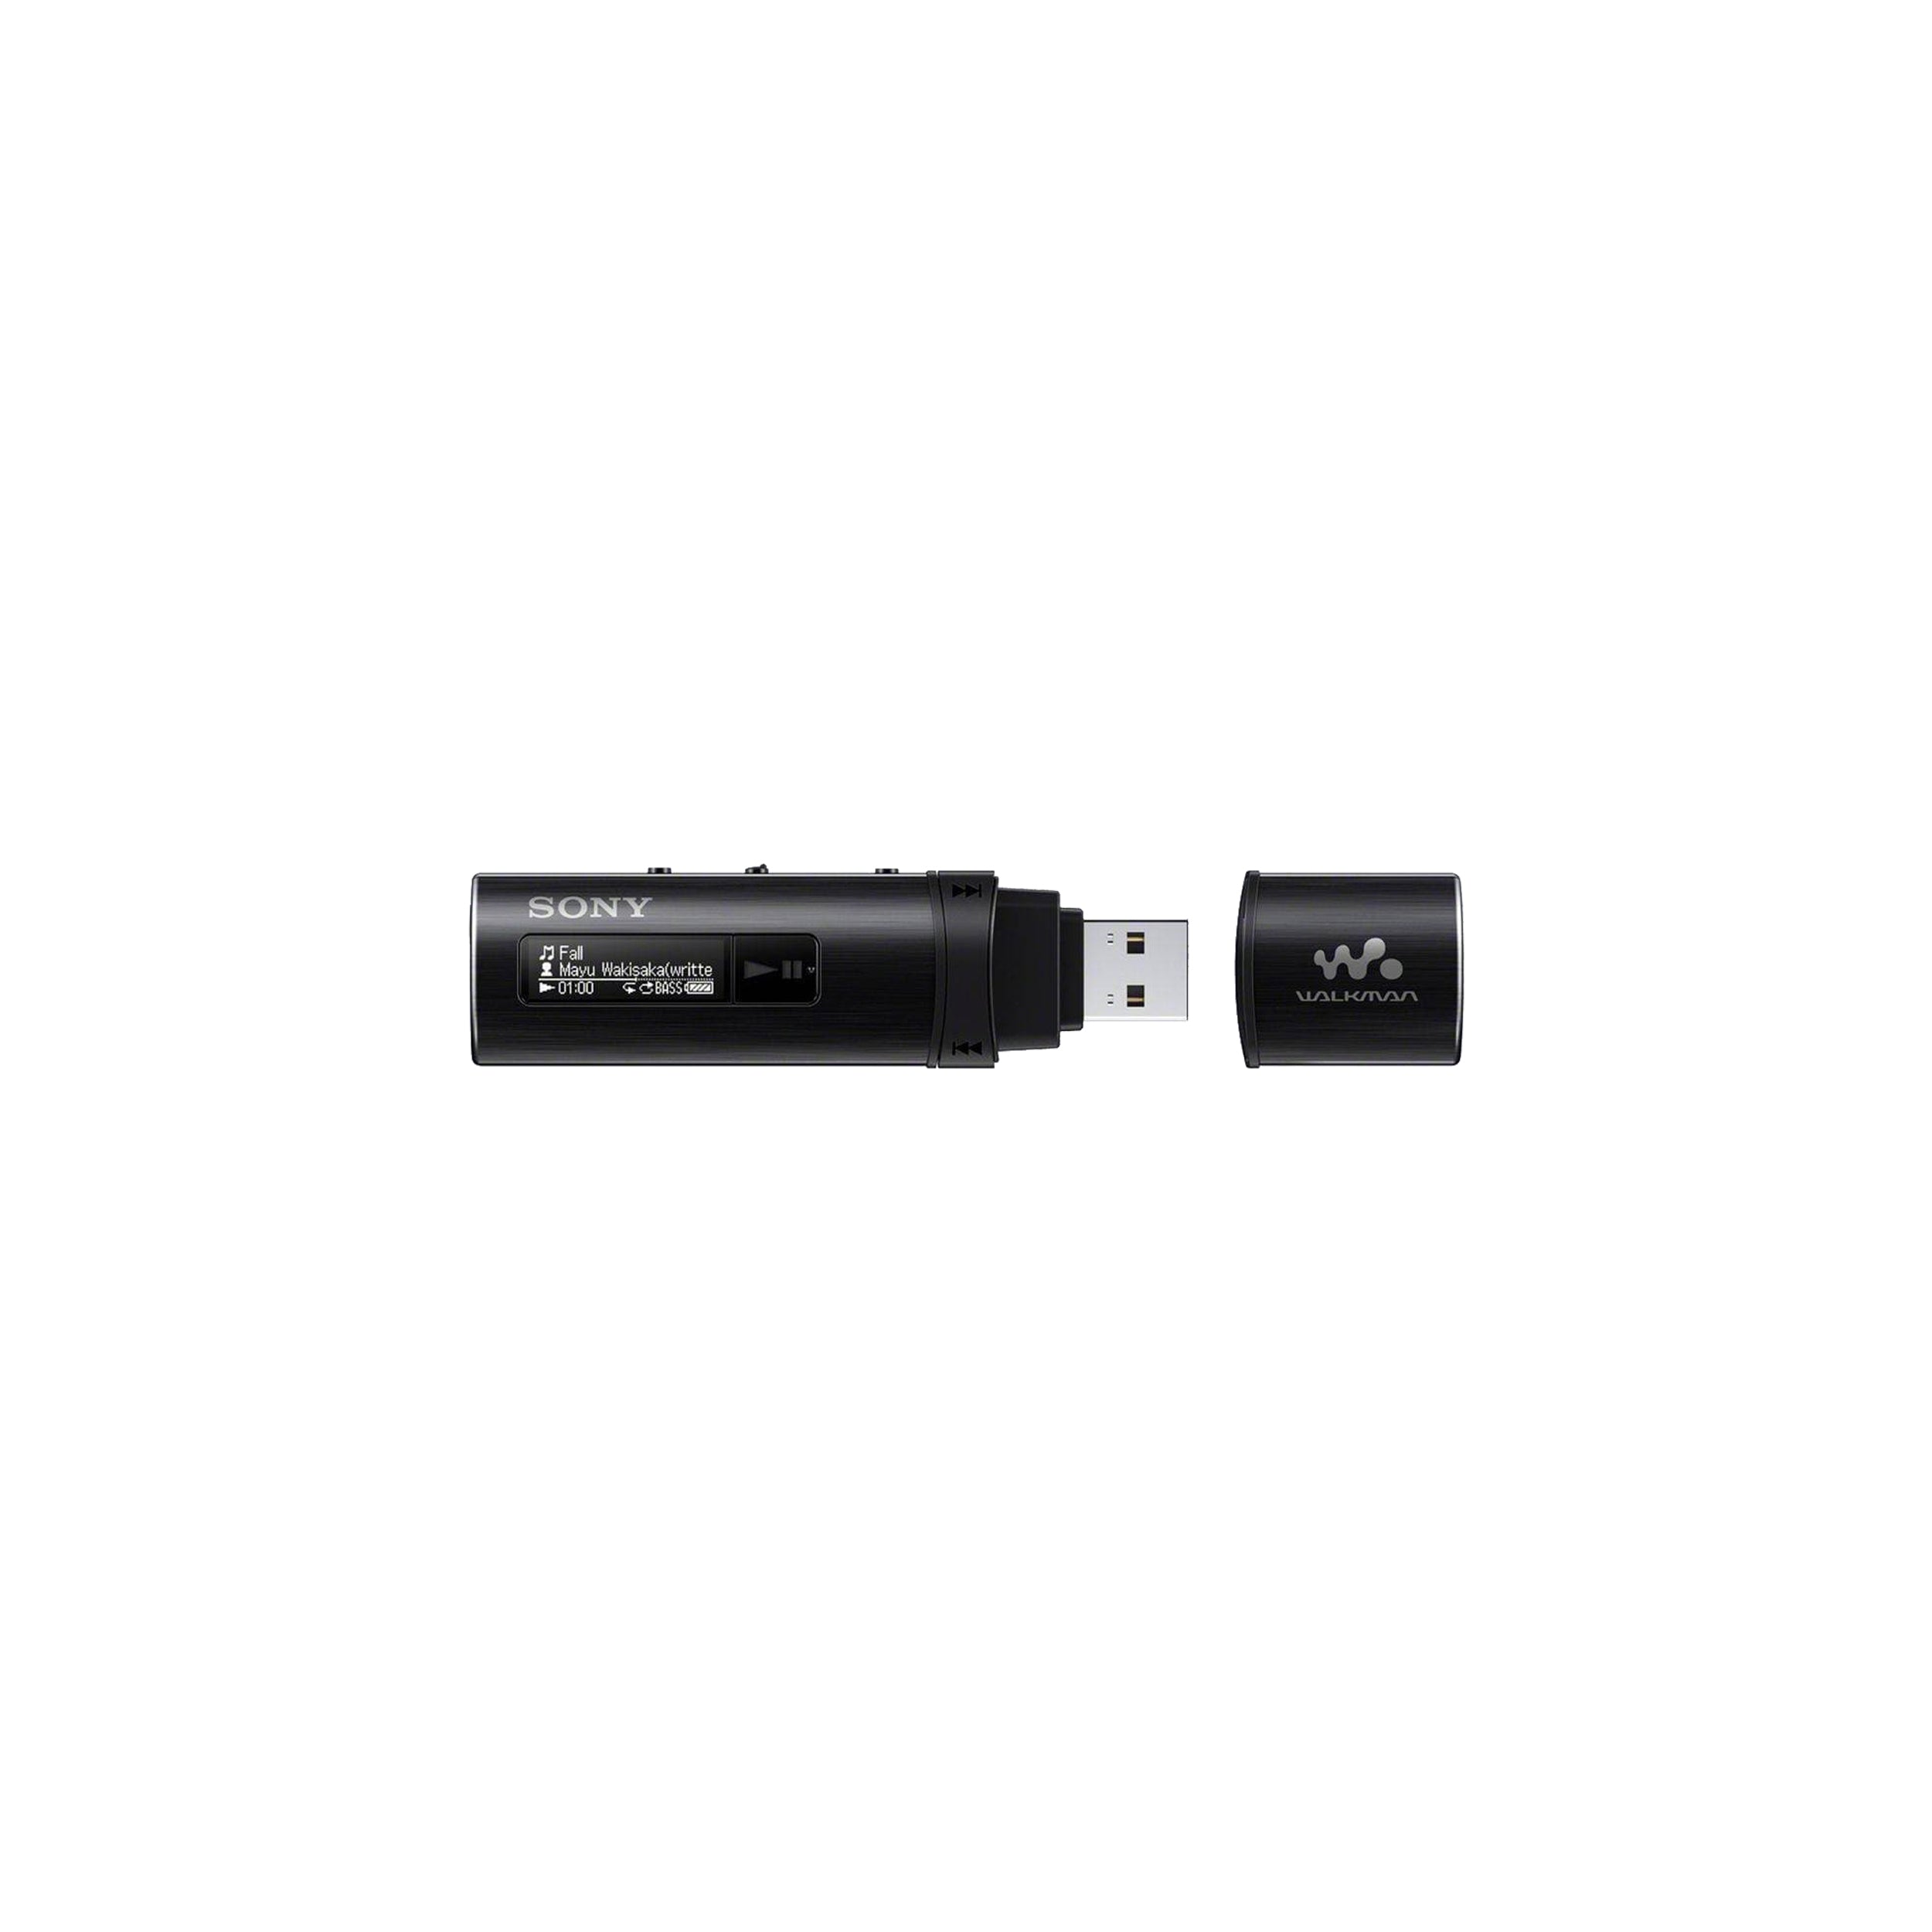 Sony NWZ-B183F 4 Go Walkman Digital Music Player - Black